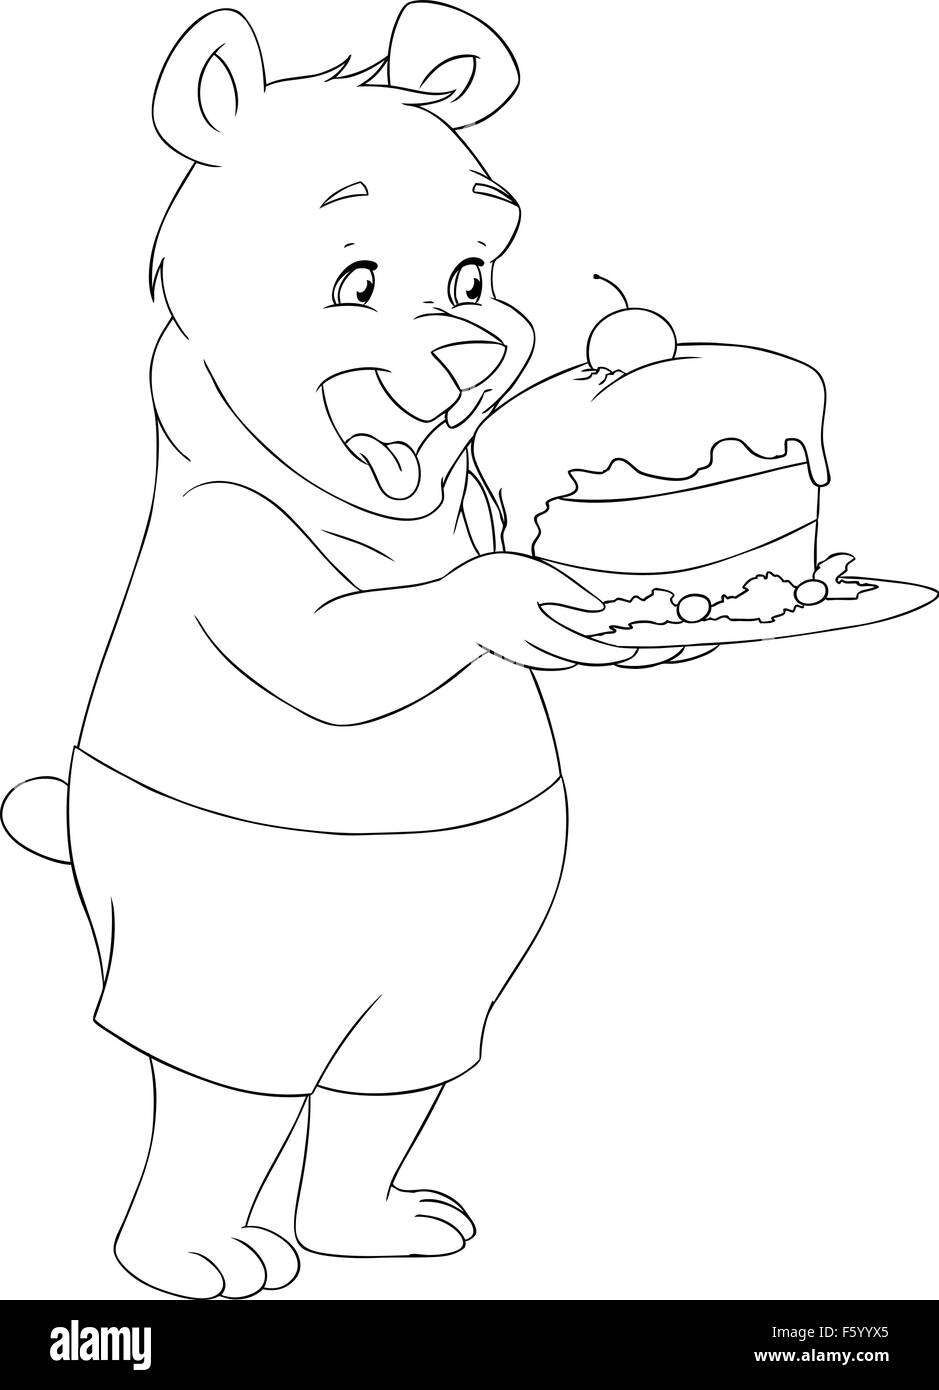 Vektor-Illustration Malvorlagen von einem niedlichen jungen Bären halten einen leckeren Kuchen. Stock Vektor